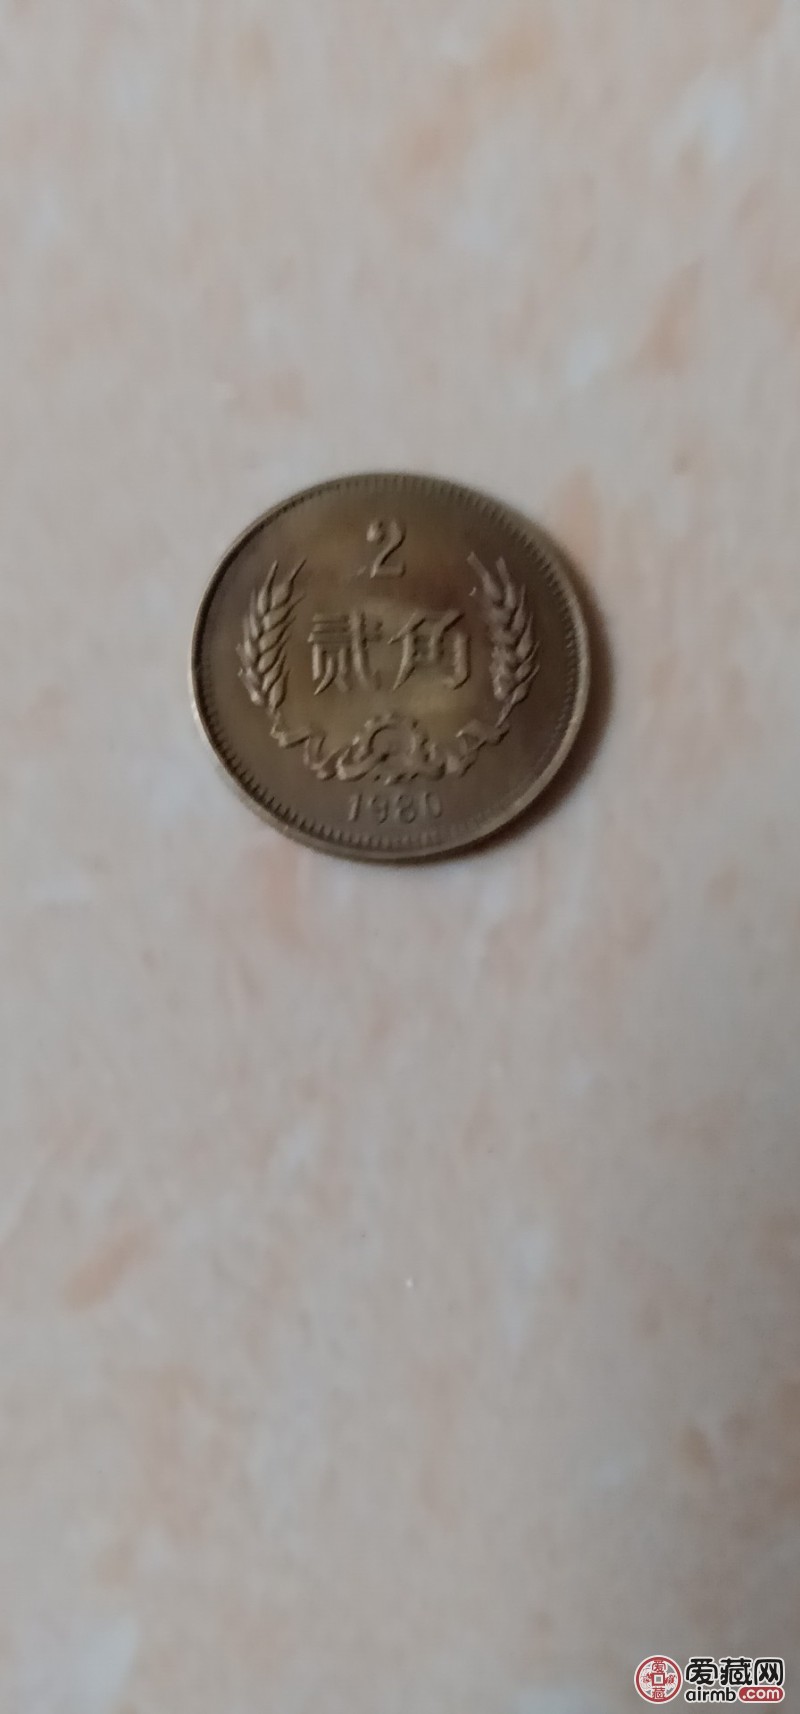 这两枚硬币在老家柜子里发现，以